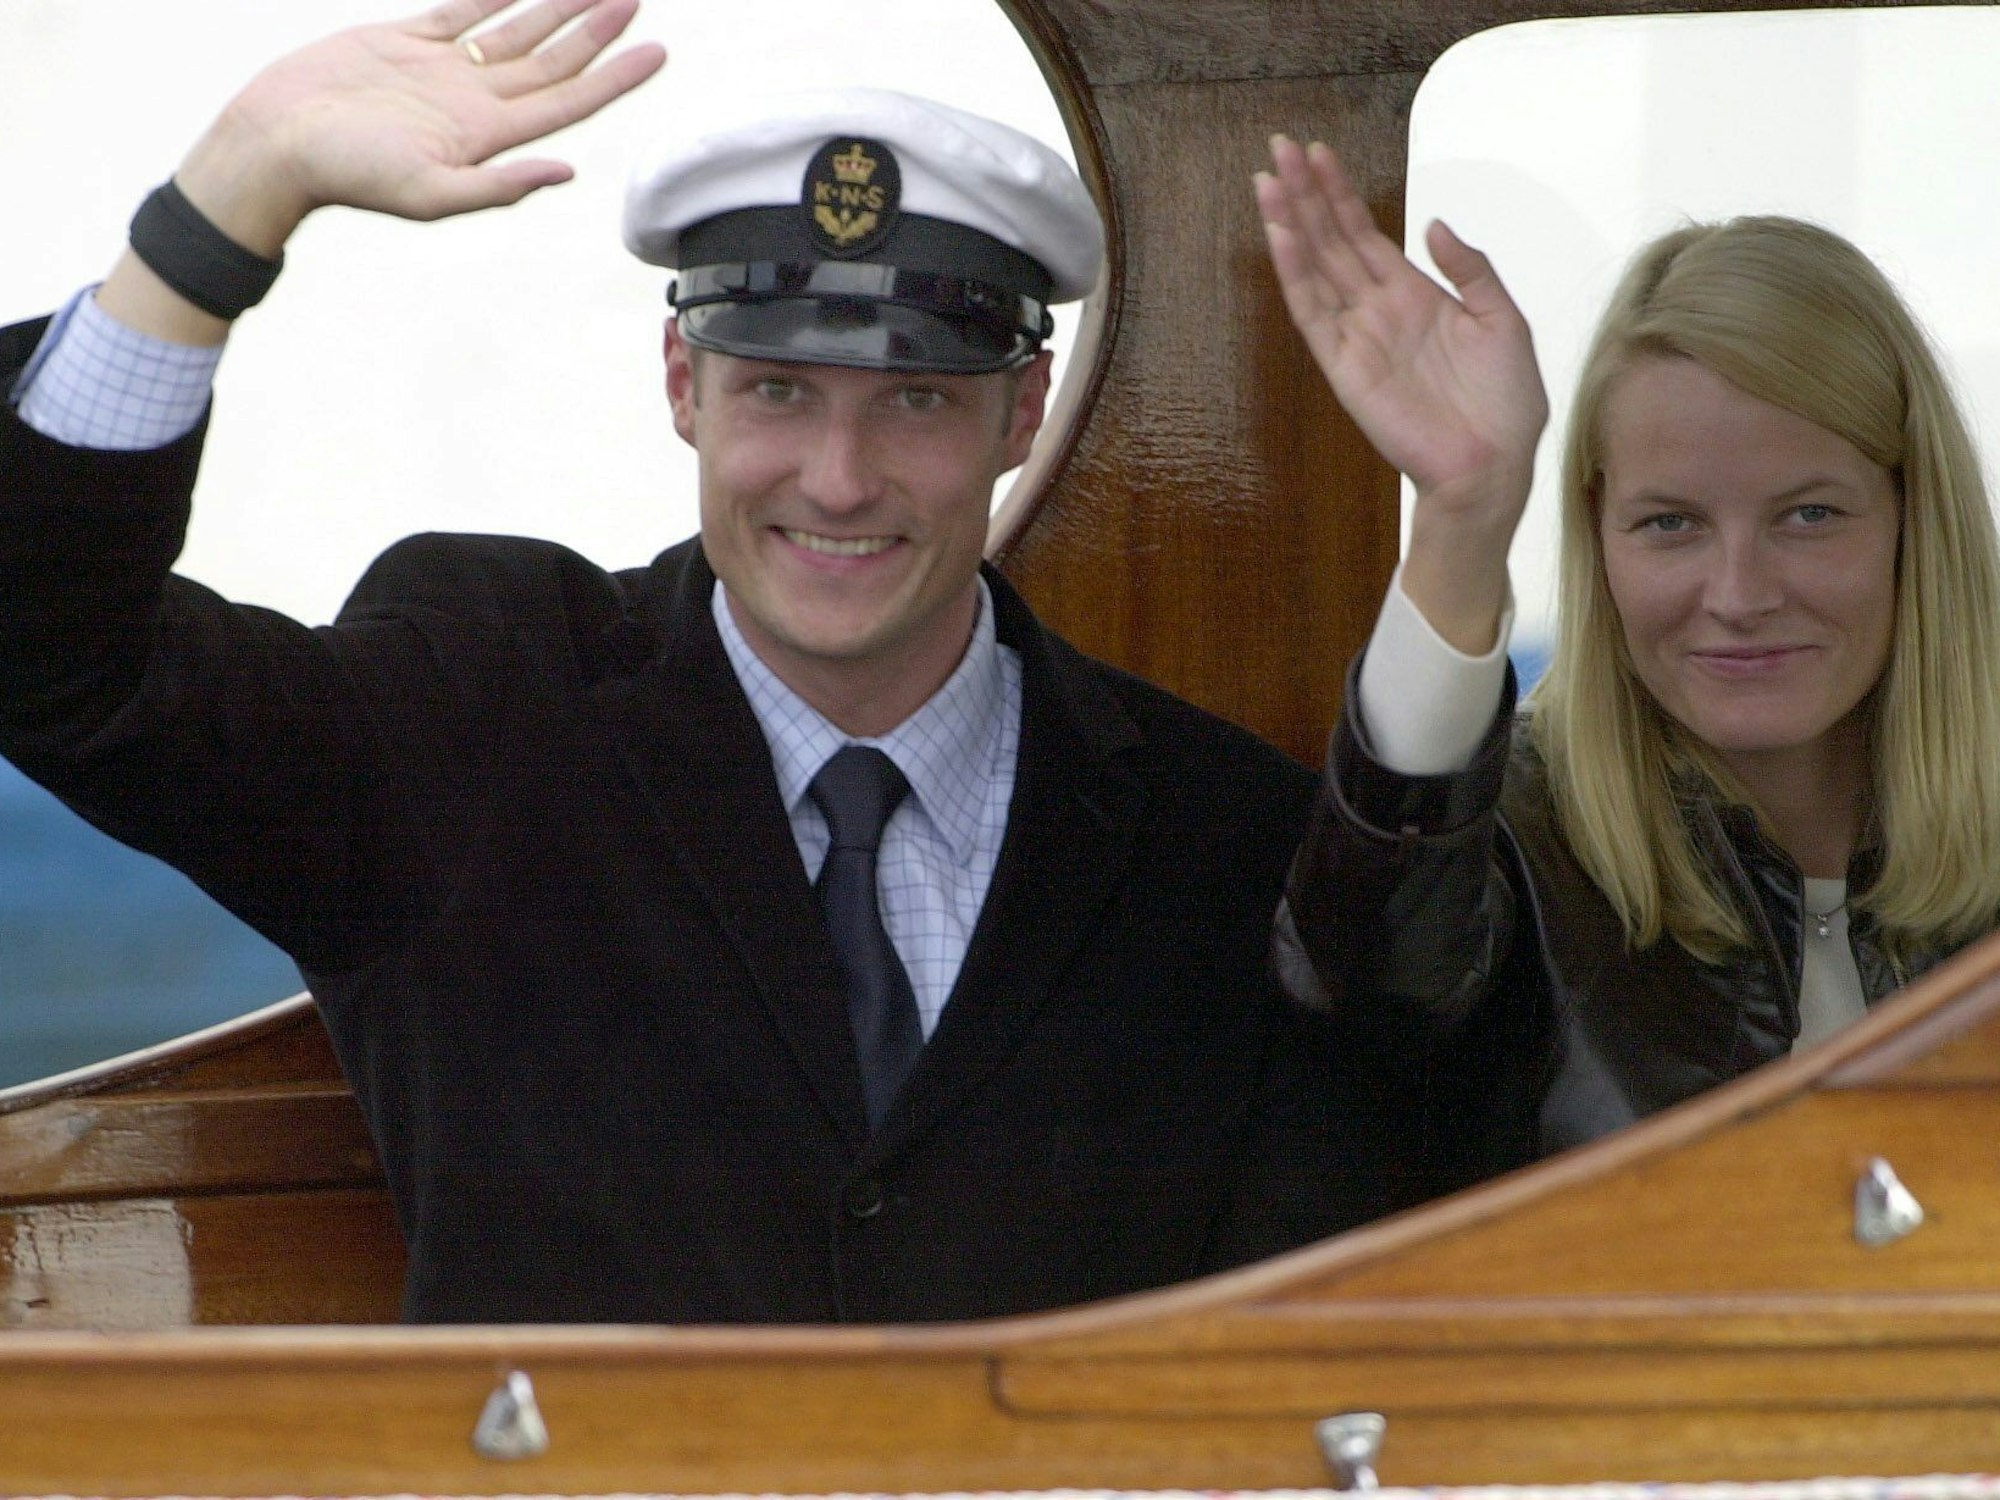 Von Bord der königlichen Schaluppe winken Kronprinz Haakon und seine Braut Mette-Marit Tjessem Høiby am 24. August 2001 im Hafen von Oslo den wartenden Journalisten zu.